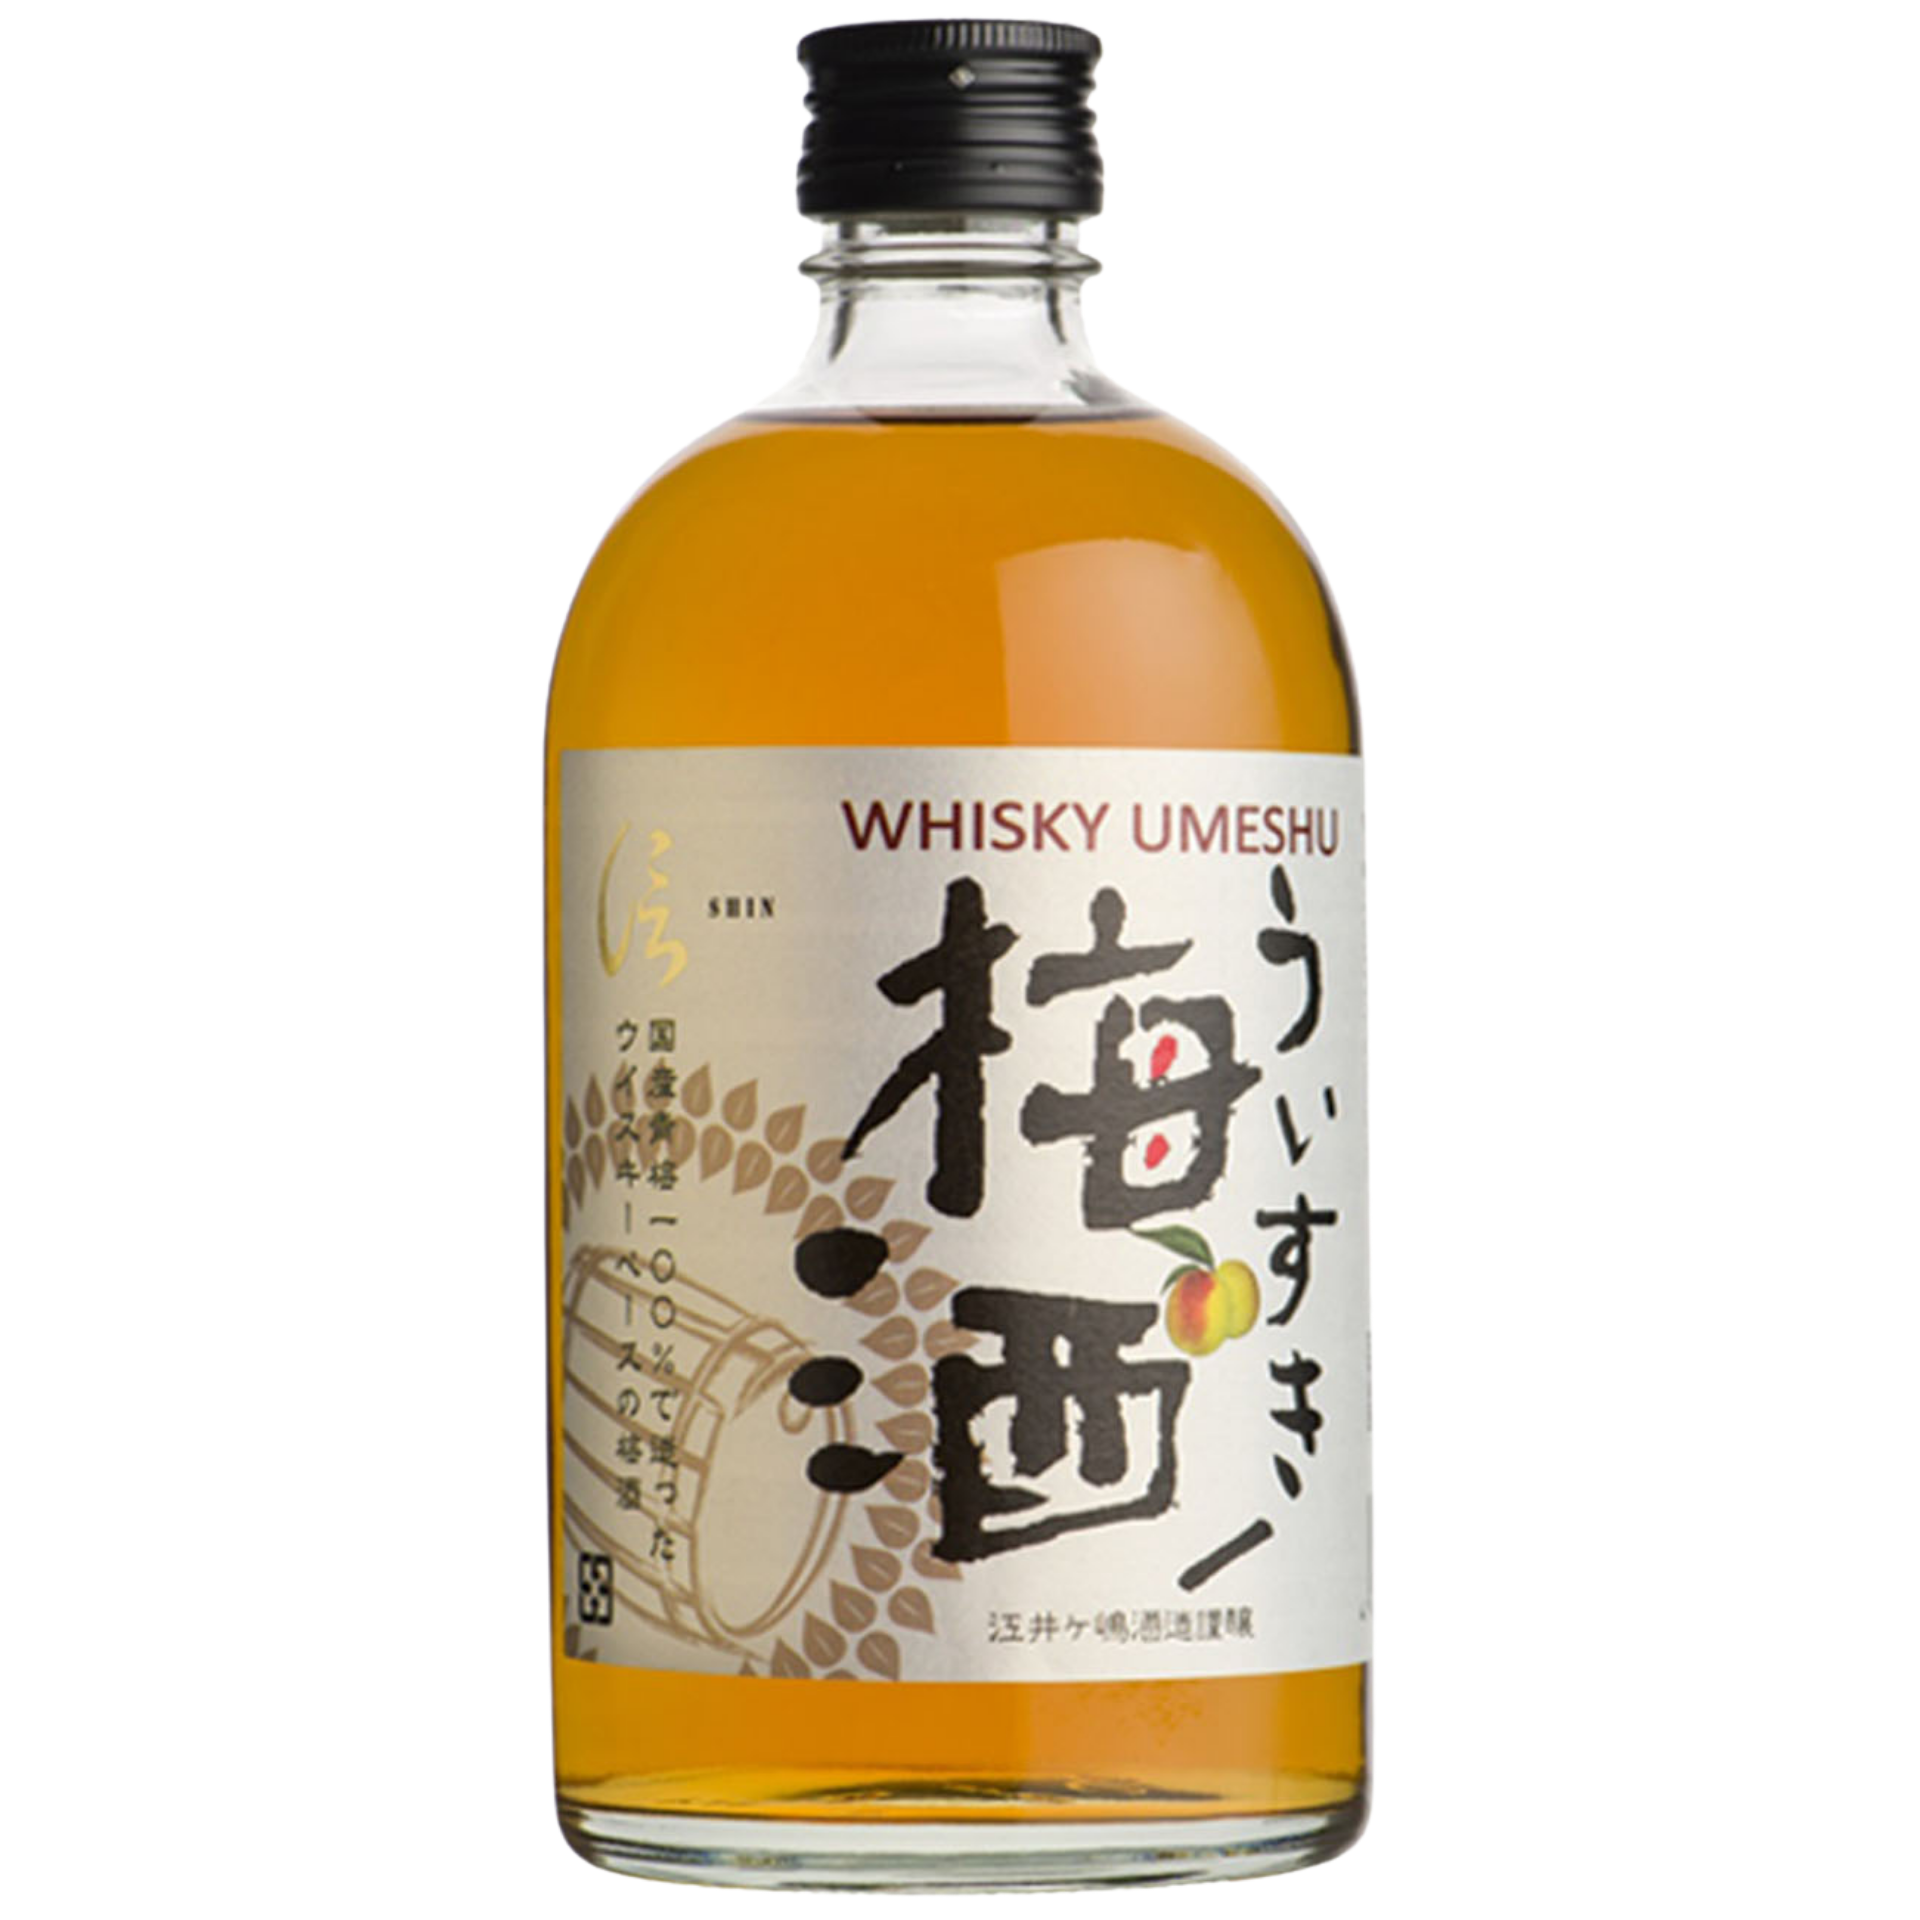 SHIN Umeshu with Akashi Blended Whisky 500ml